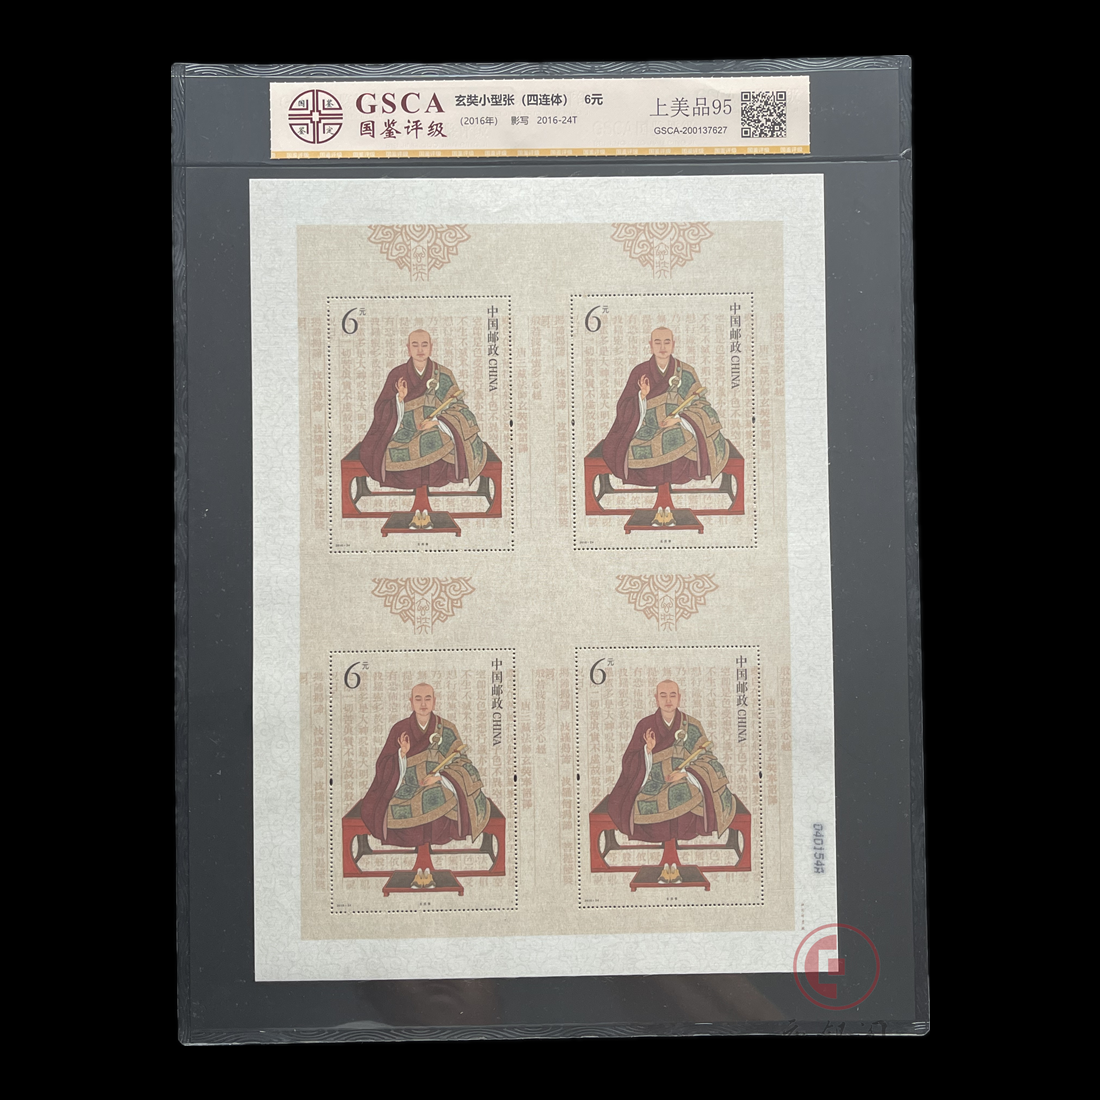 2016-24《玄奘》特种邮票丝绸小型张四连体